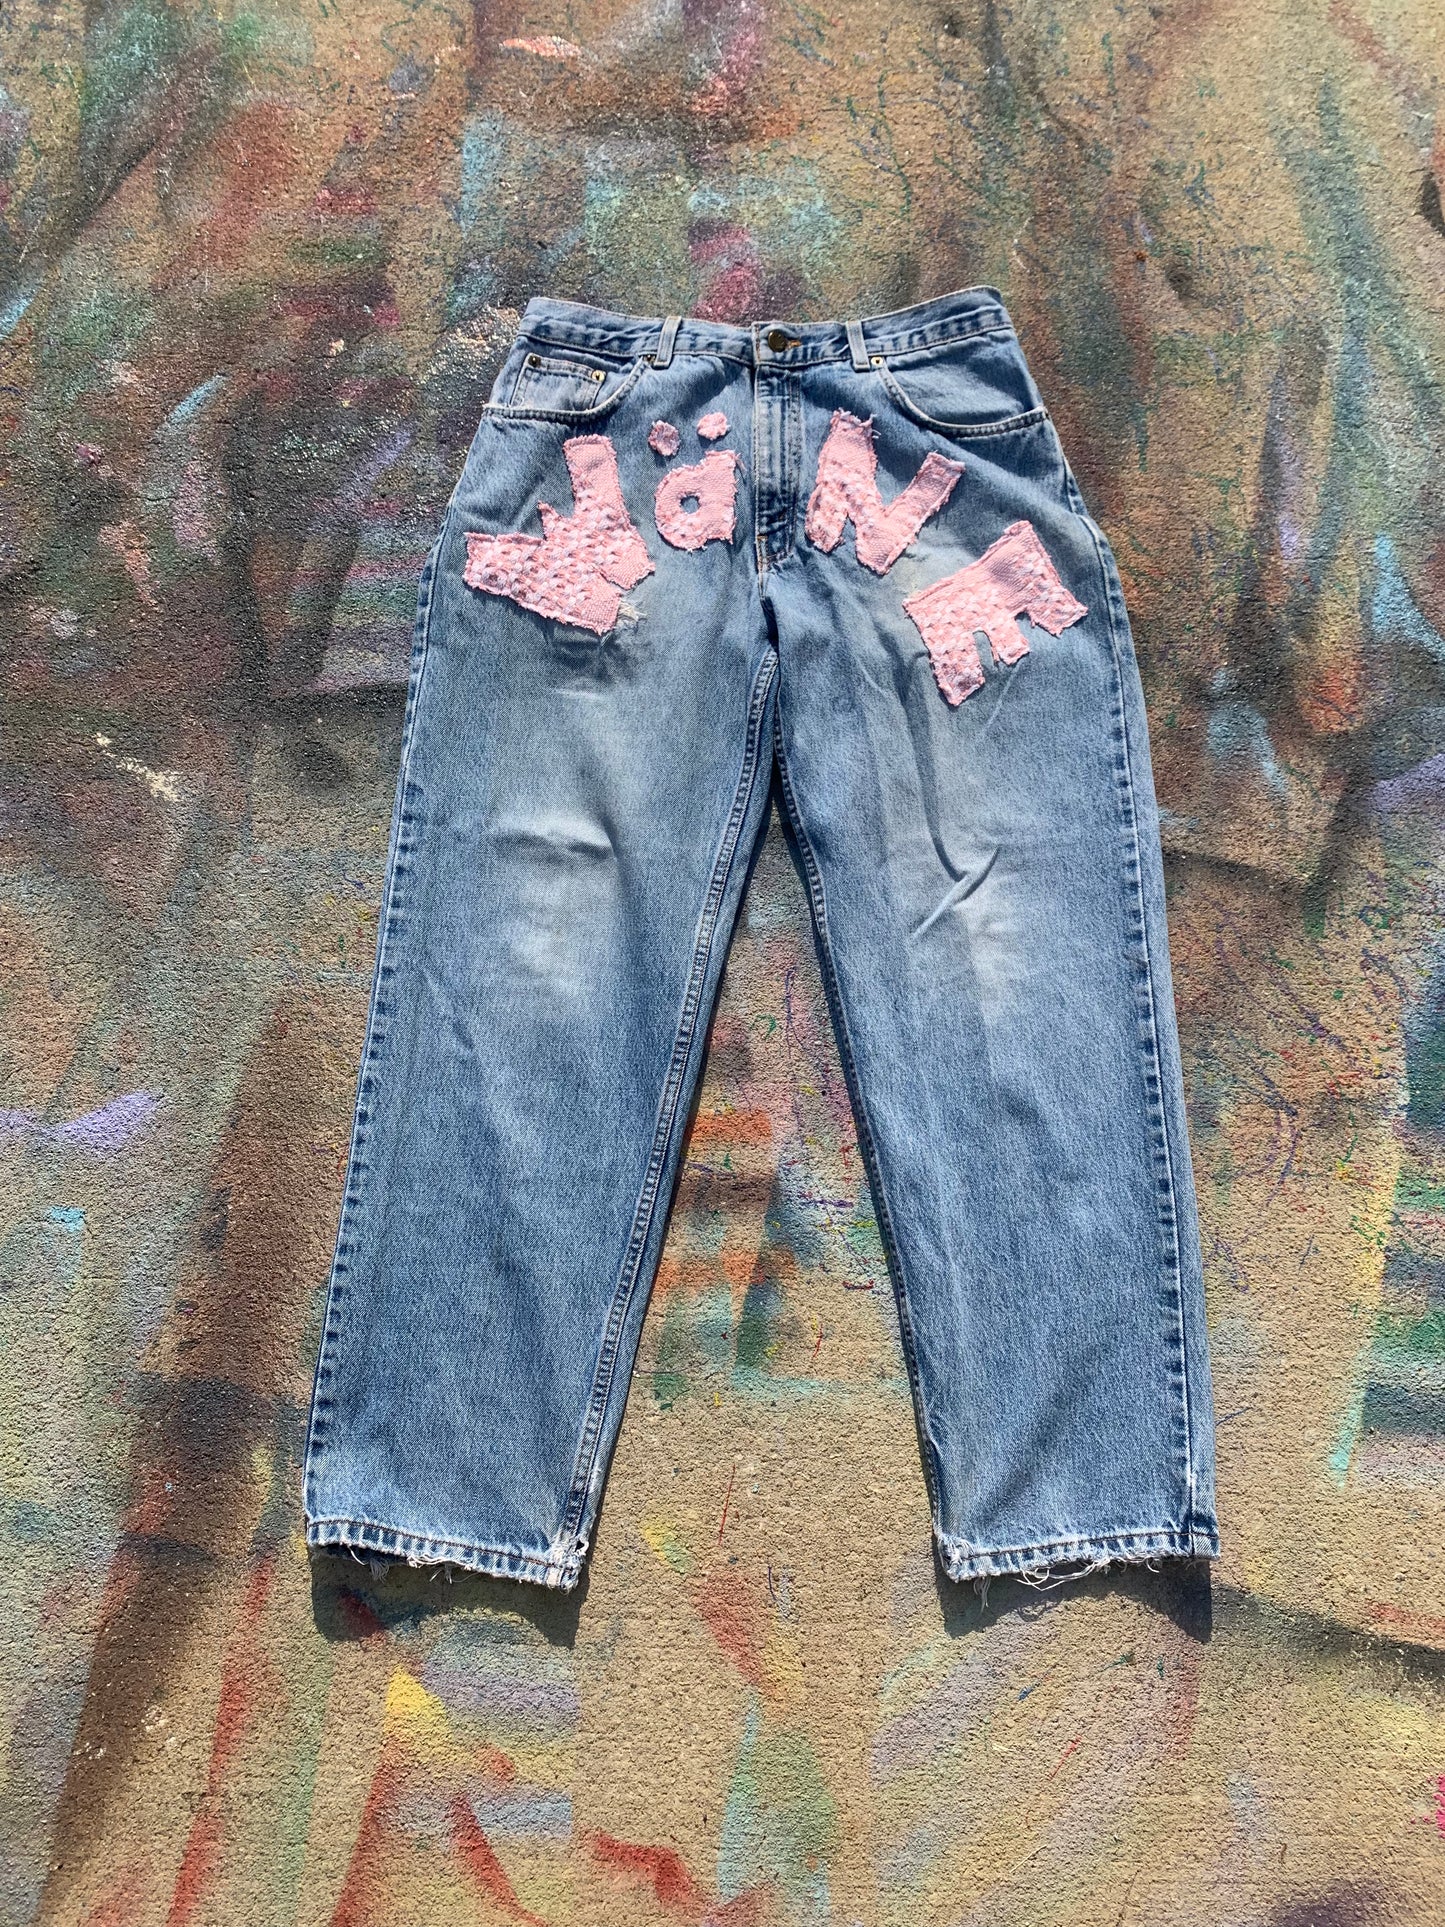 Wäne Wear Jeans (Pink/Blue)- 34/30